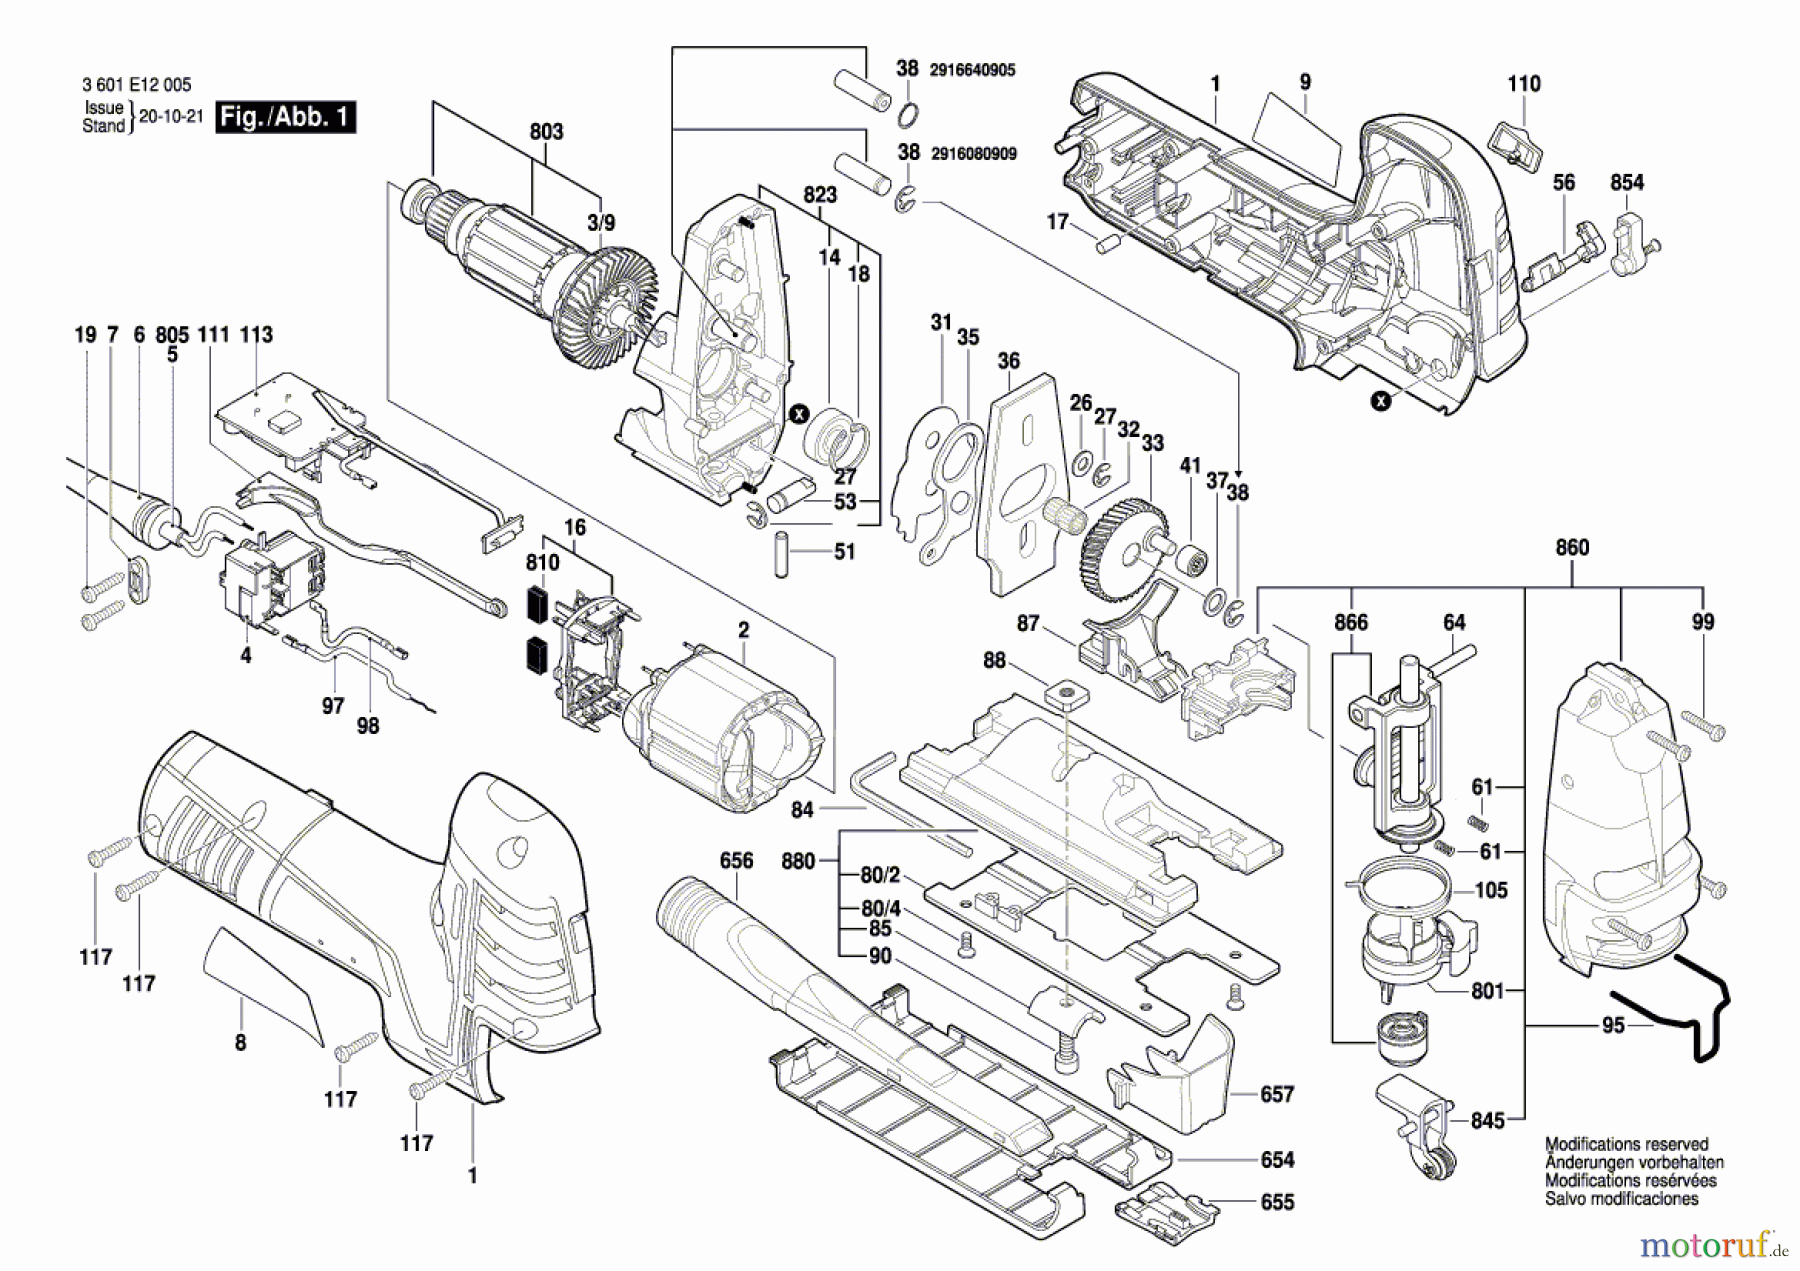  Bosch Werkzeug Stichsäge STP 150 POWER-S Seite 1